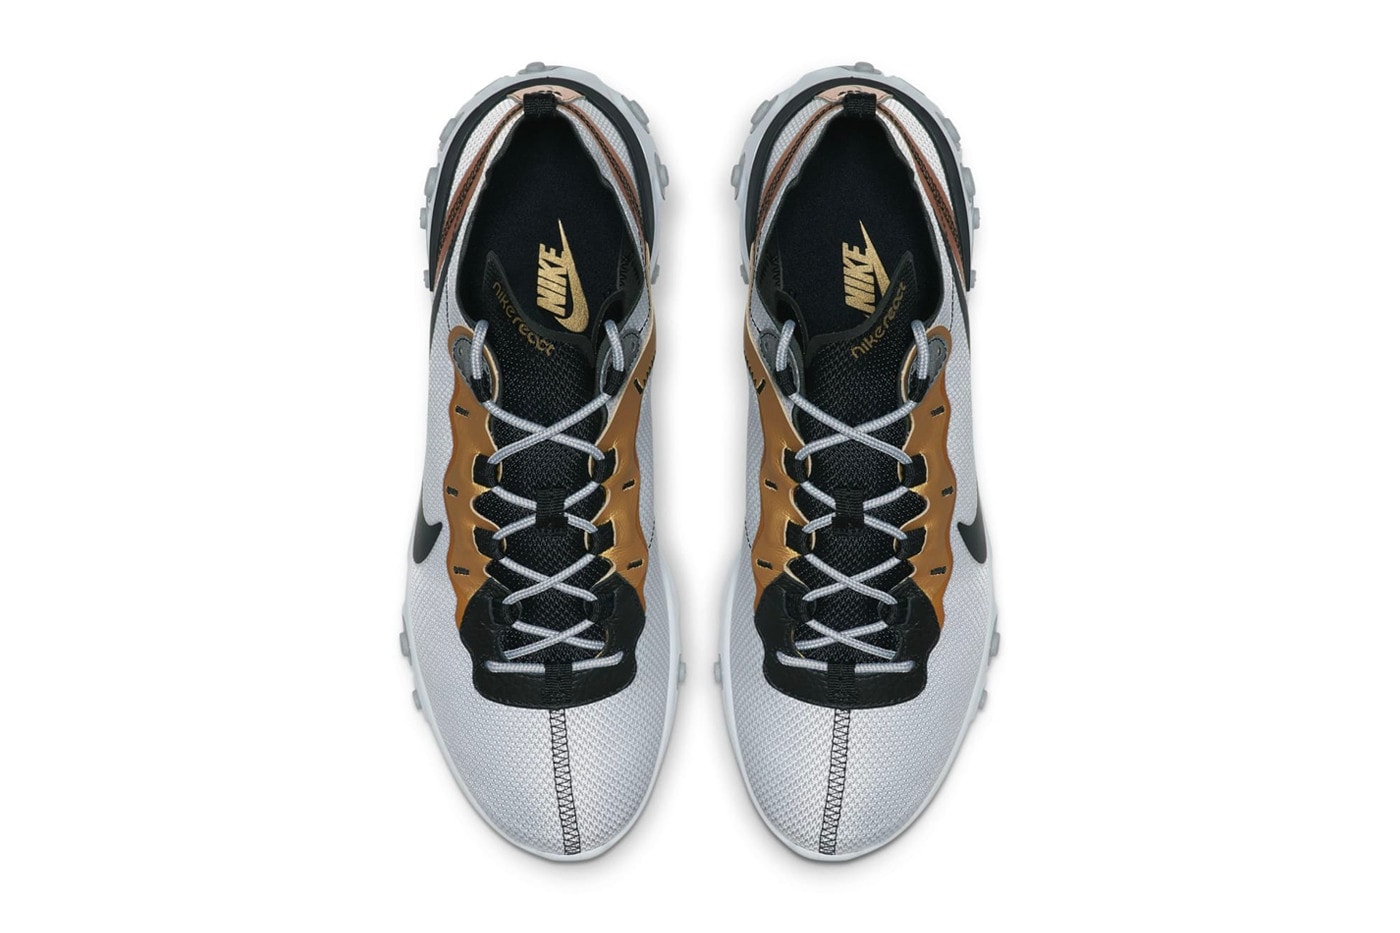 Nike 超人氣跑鞋 React Element 87 釋出全新「Metallic Gold」配色